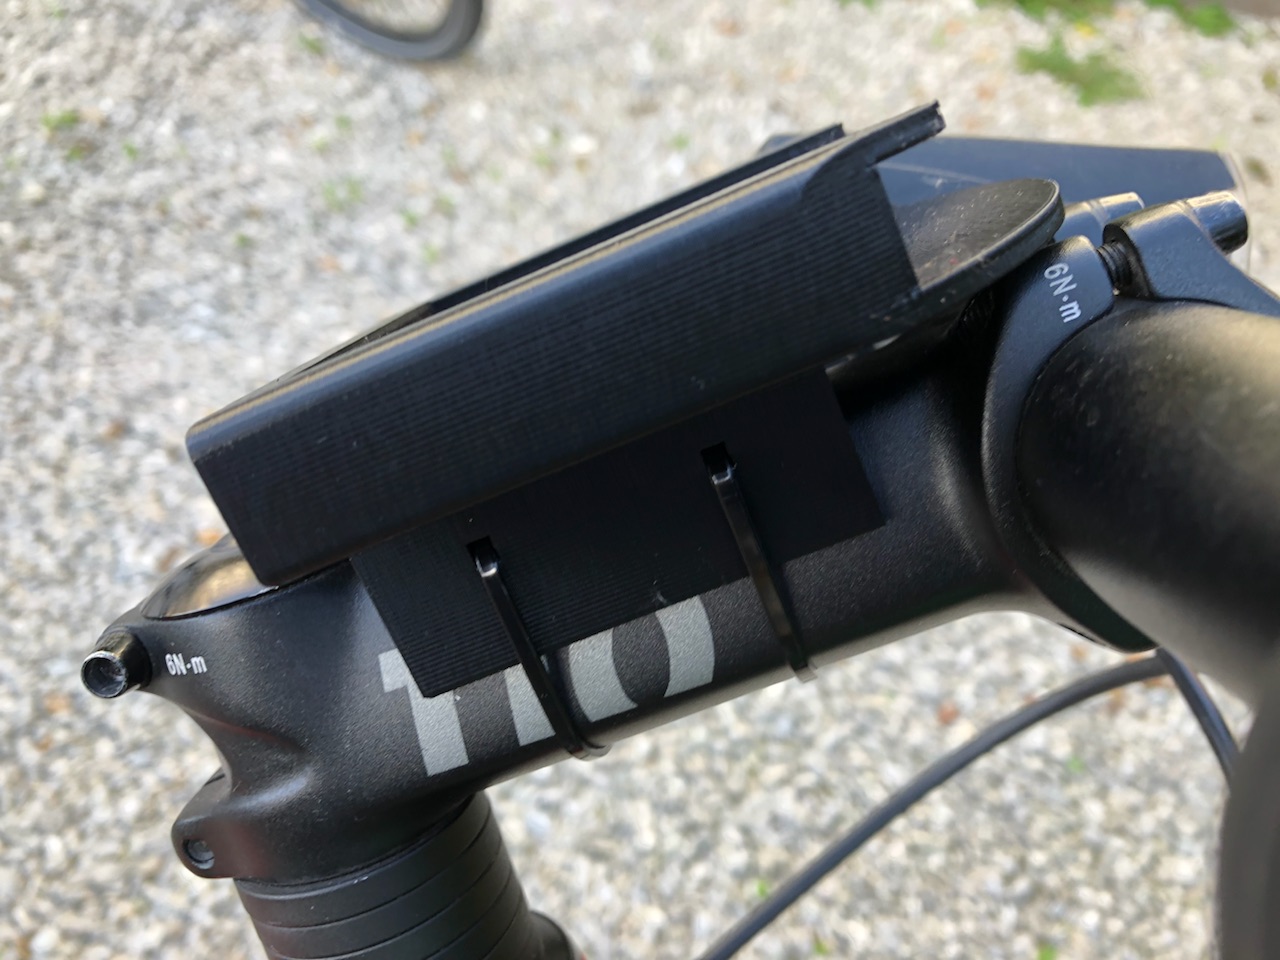 Bike phone mount